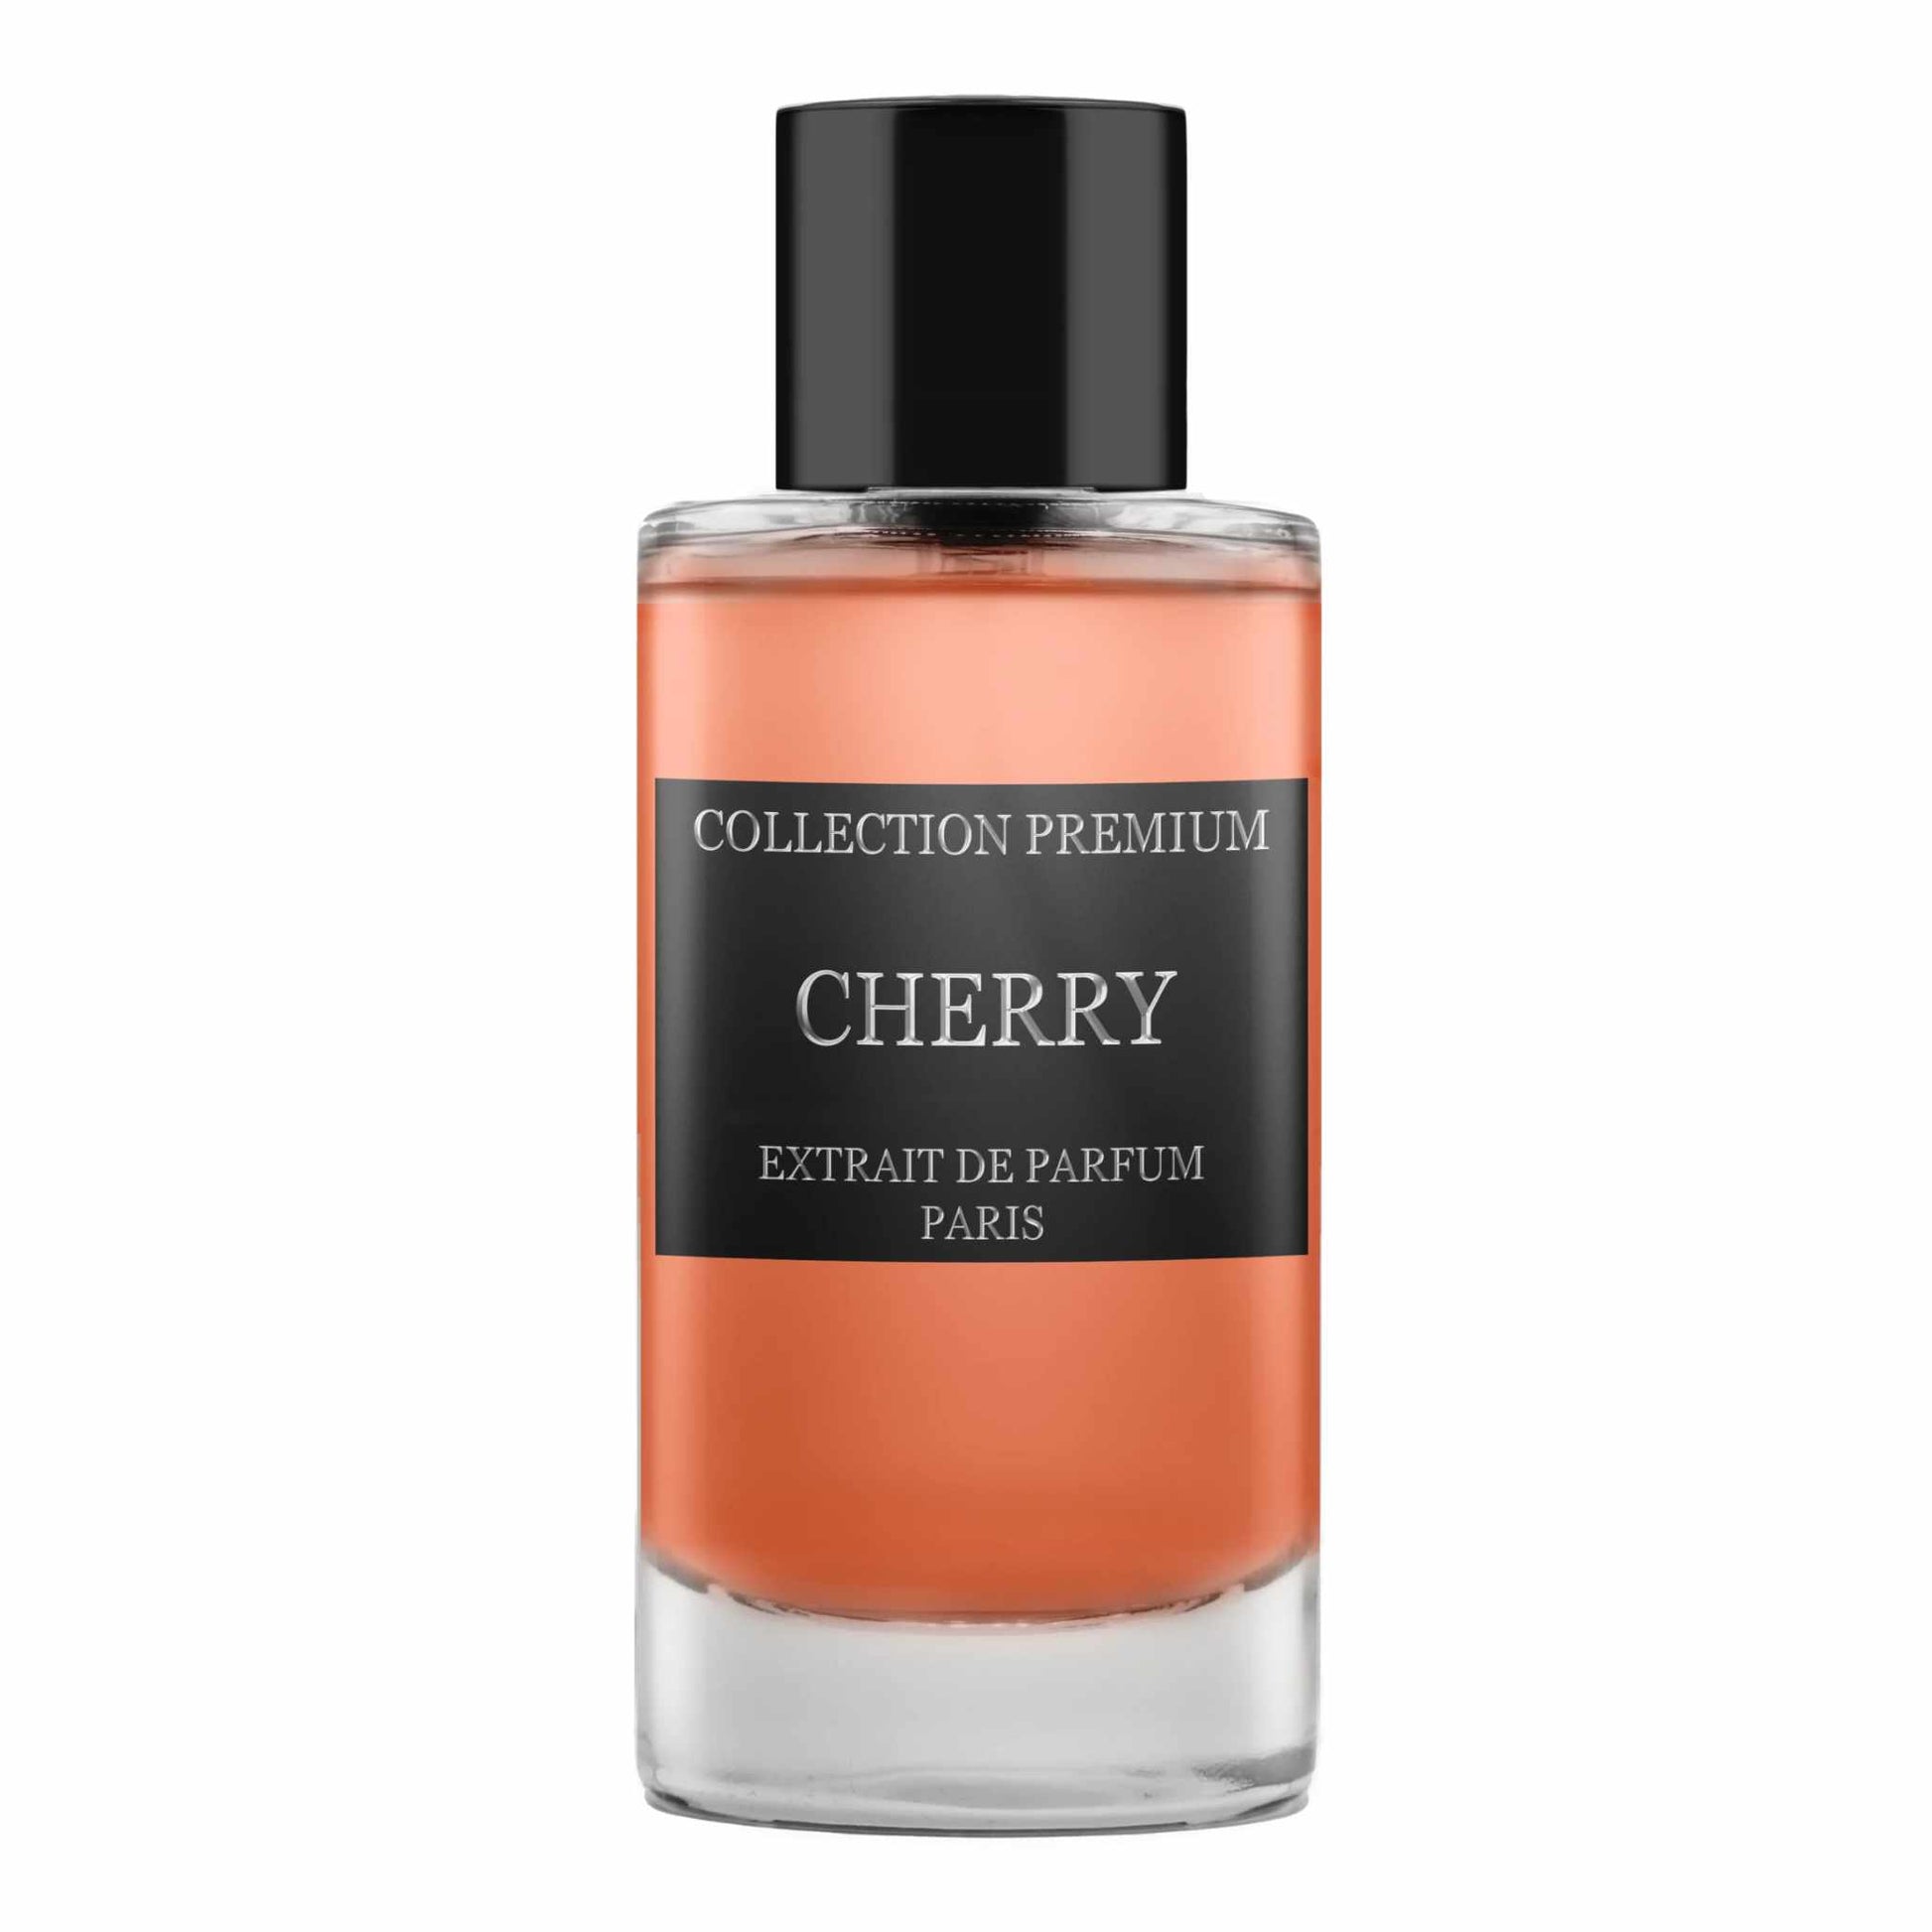 Collection Premium Cherry Extrait de Parfum 50 ml